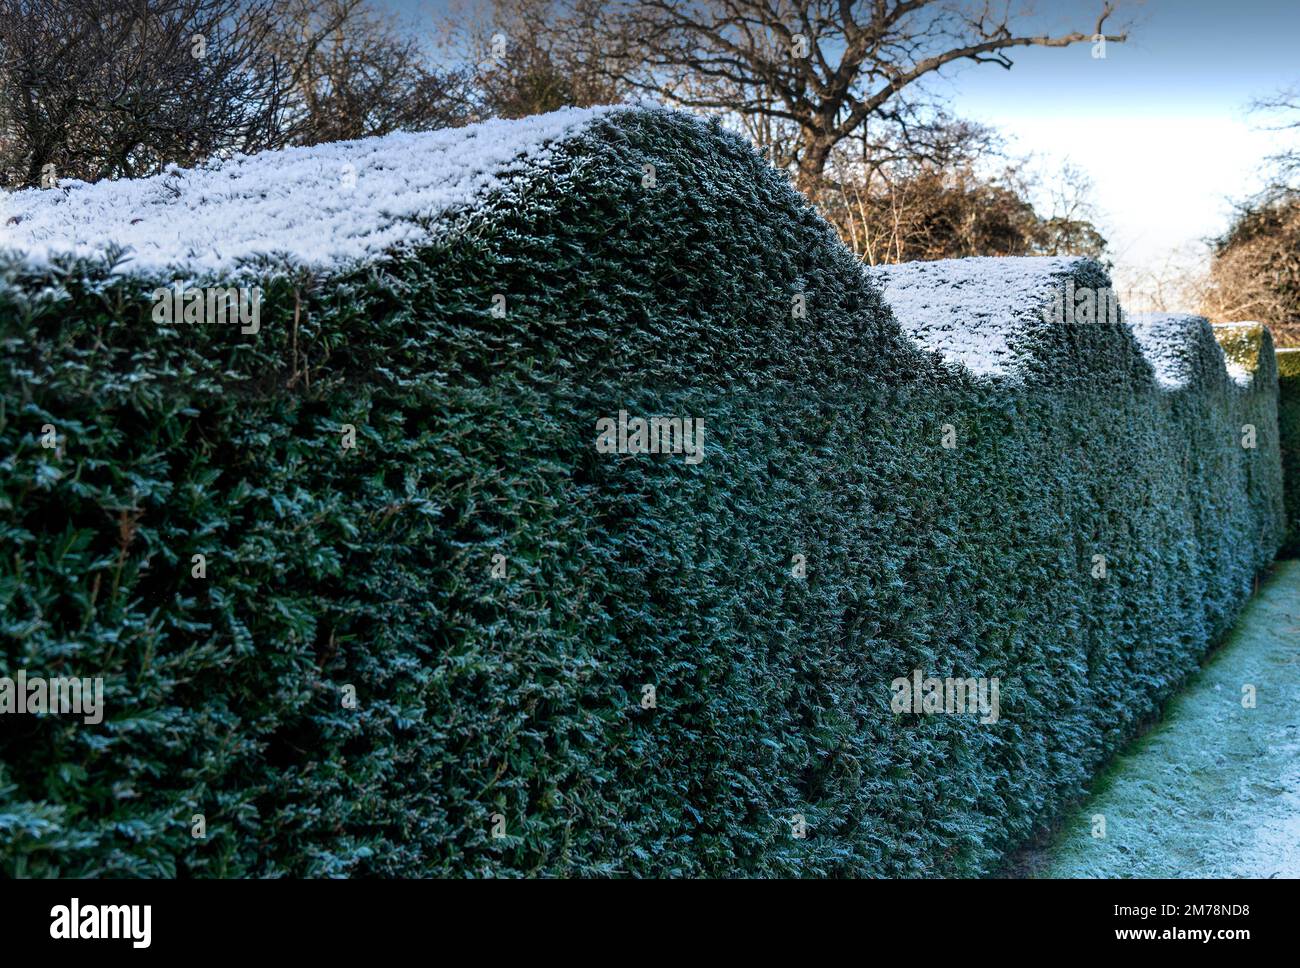 Gelido giorno d'inverno dopo una nevicata che mostra ben tagliato alto formale siepe giardino - Berkshire, Inghilterra, Regno Unito Foto Stock